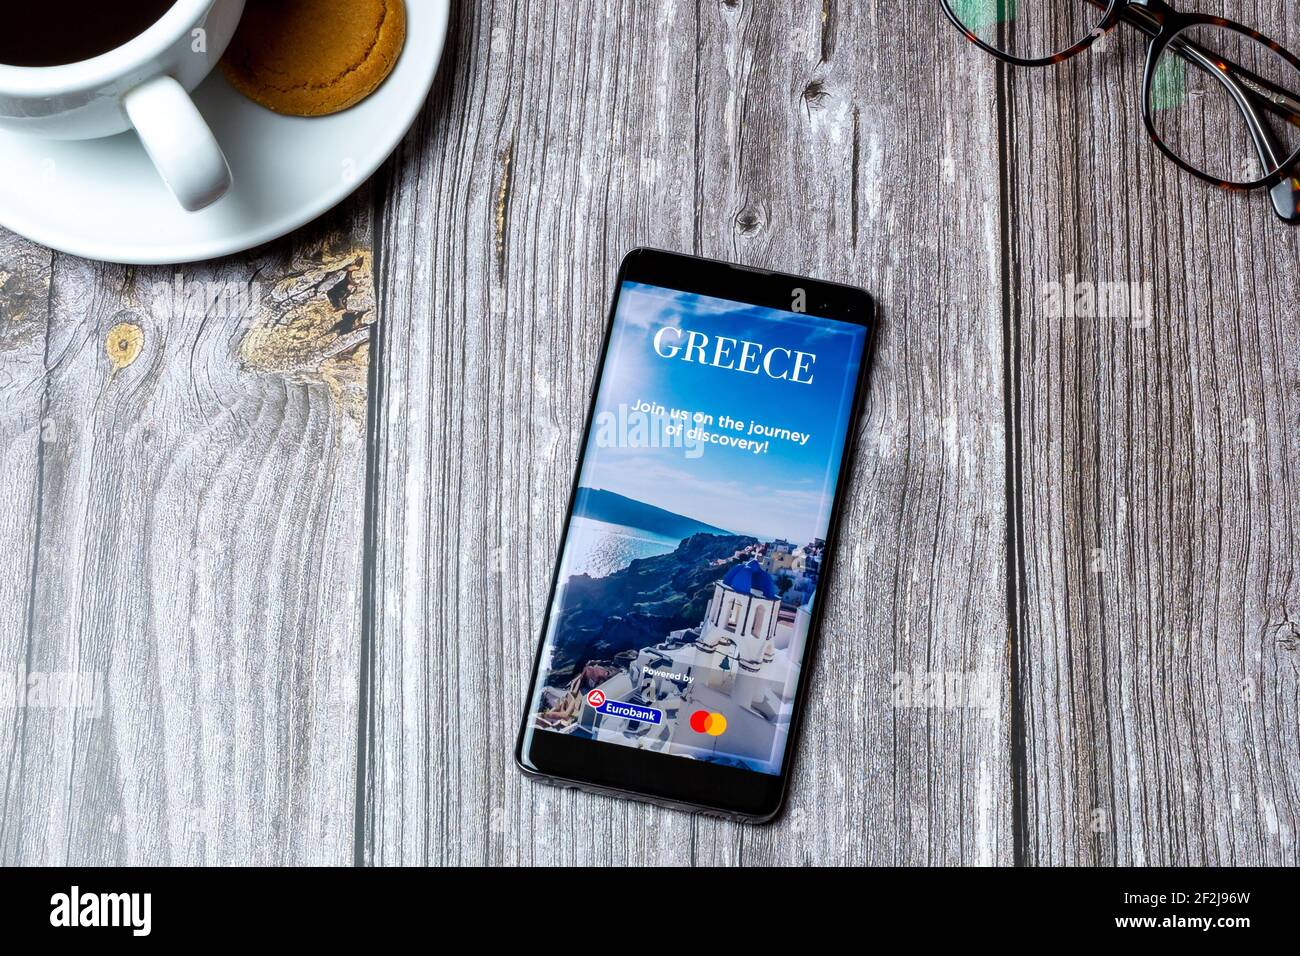 Ein Handy oder Handy auf einem Holz gelegt Tabelle mit der Visit Greece App auf dem Bildschirm geöffnet Stockfoto